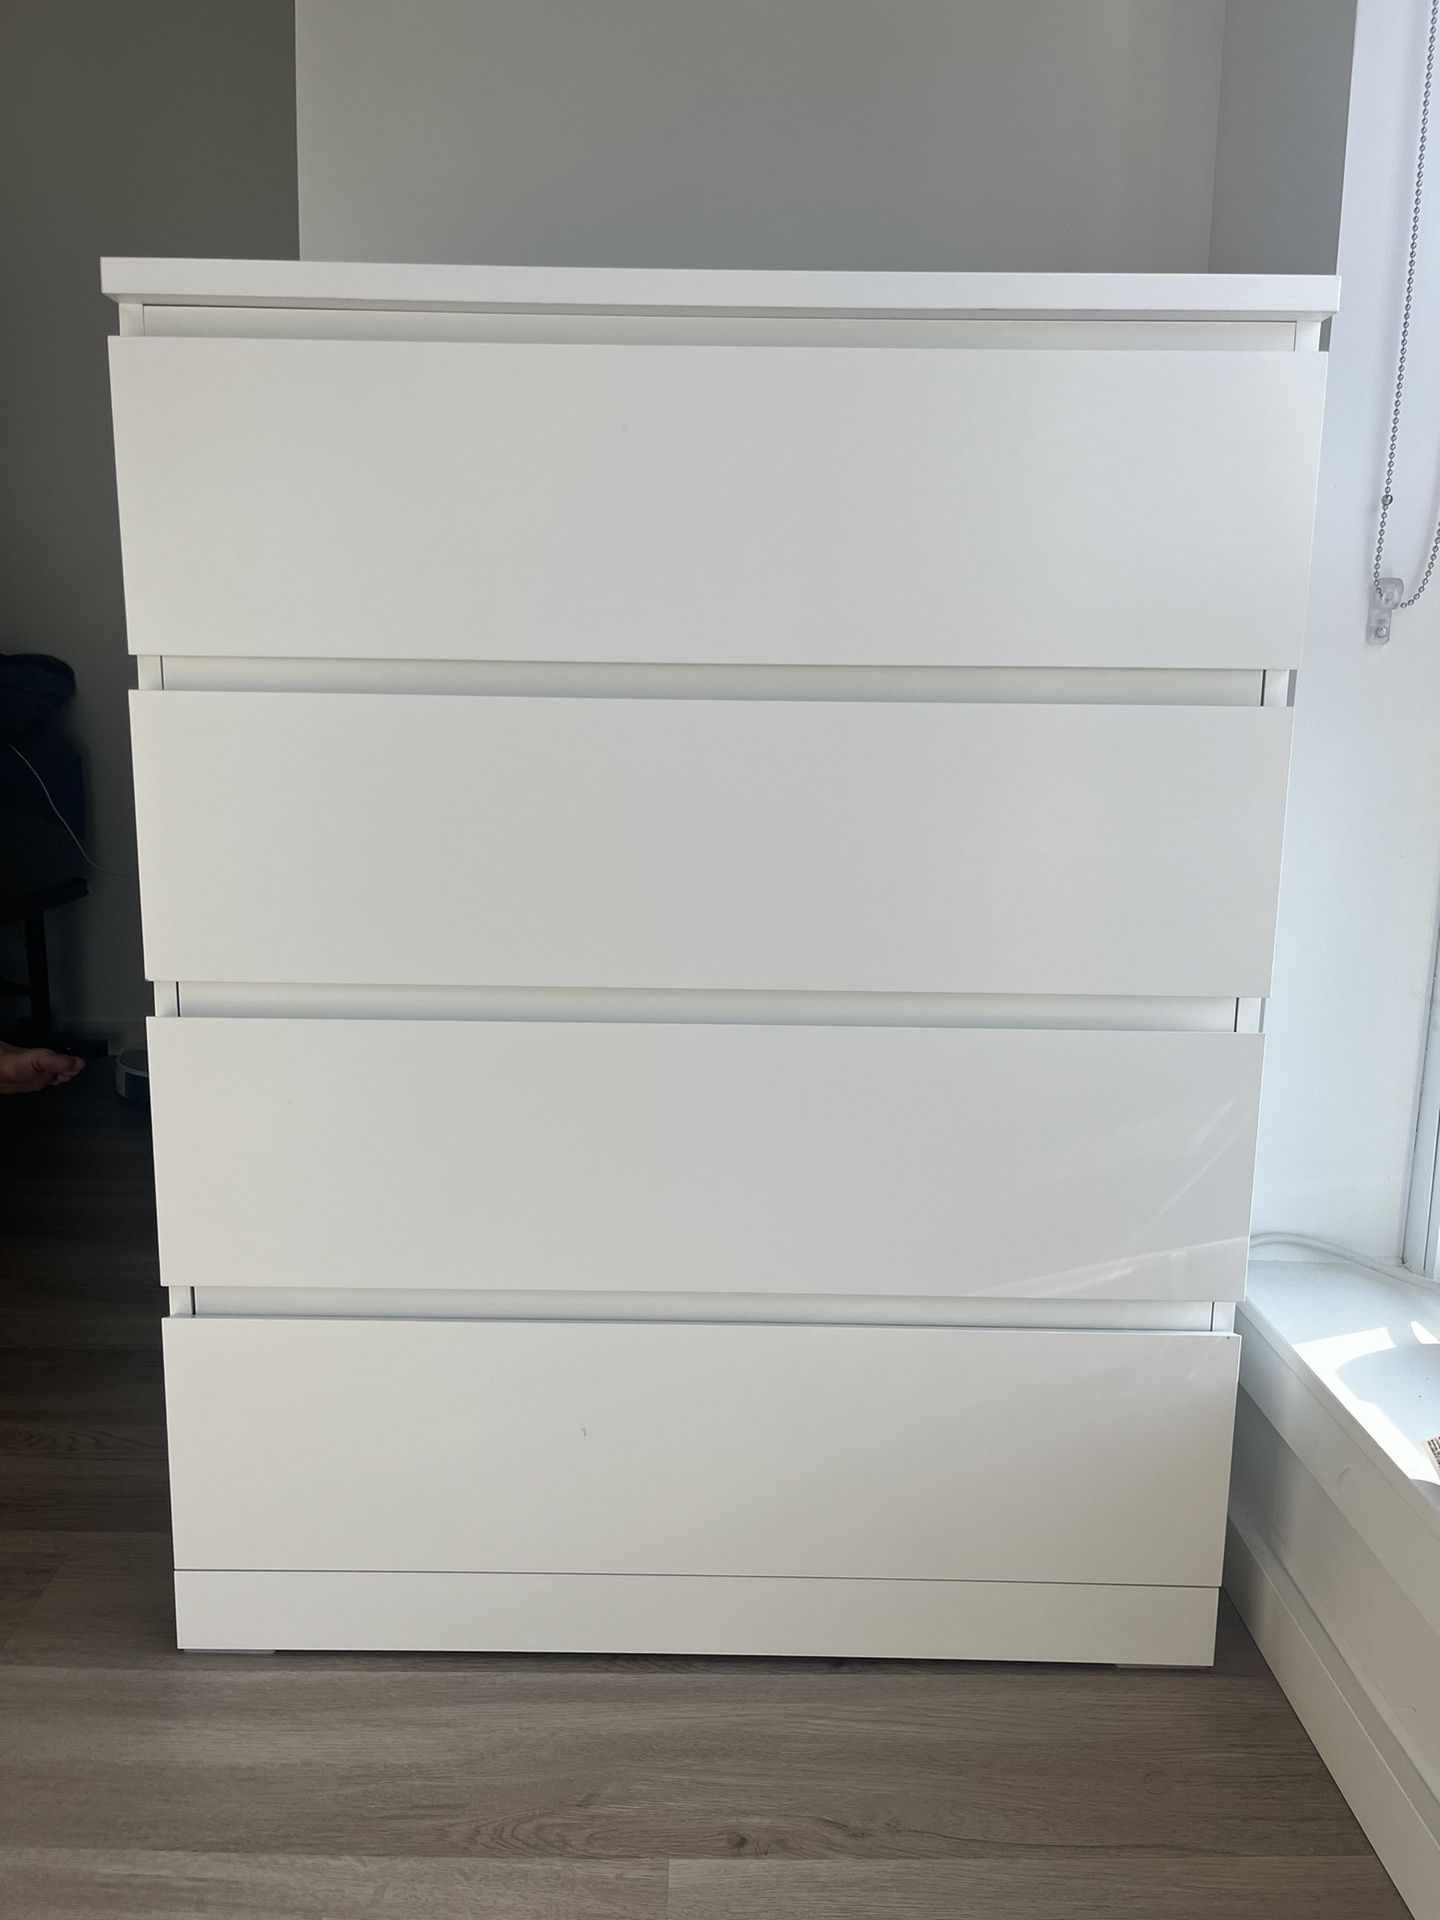 IKEA 4 Draw Dresser 